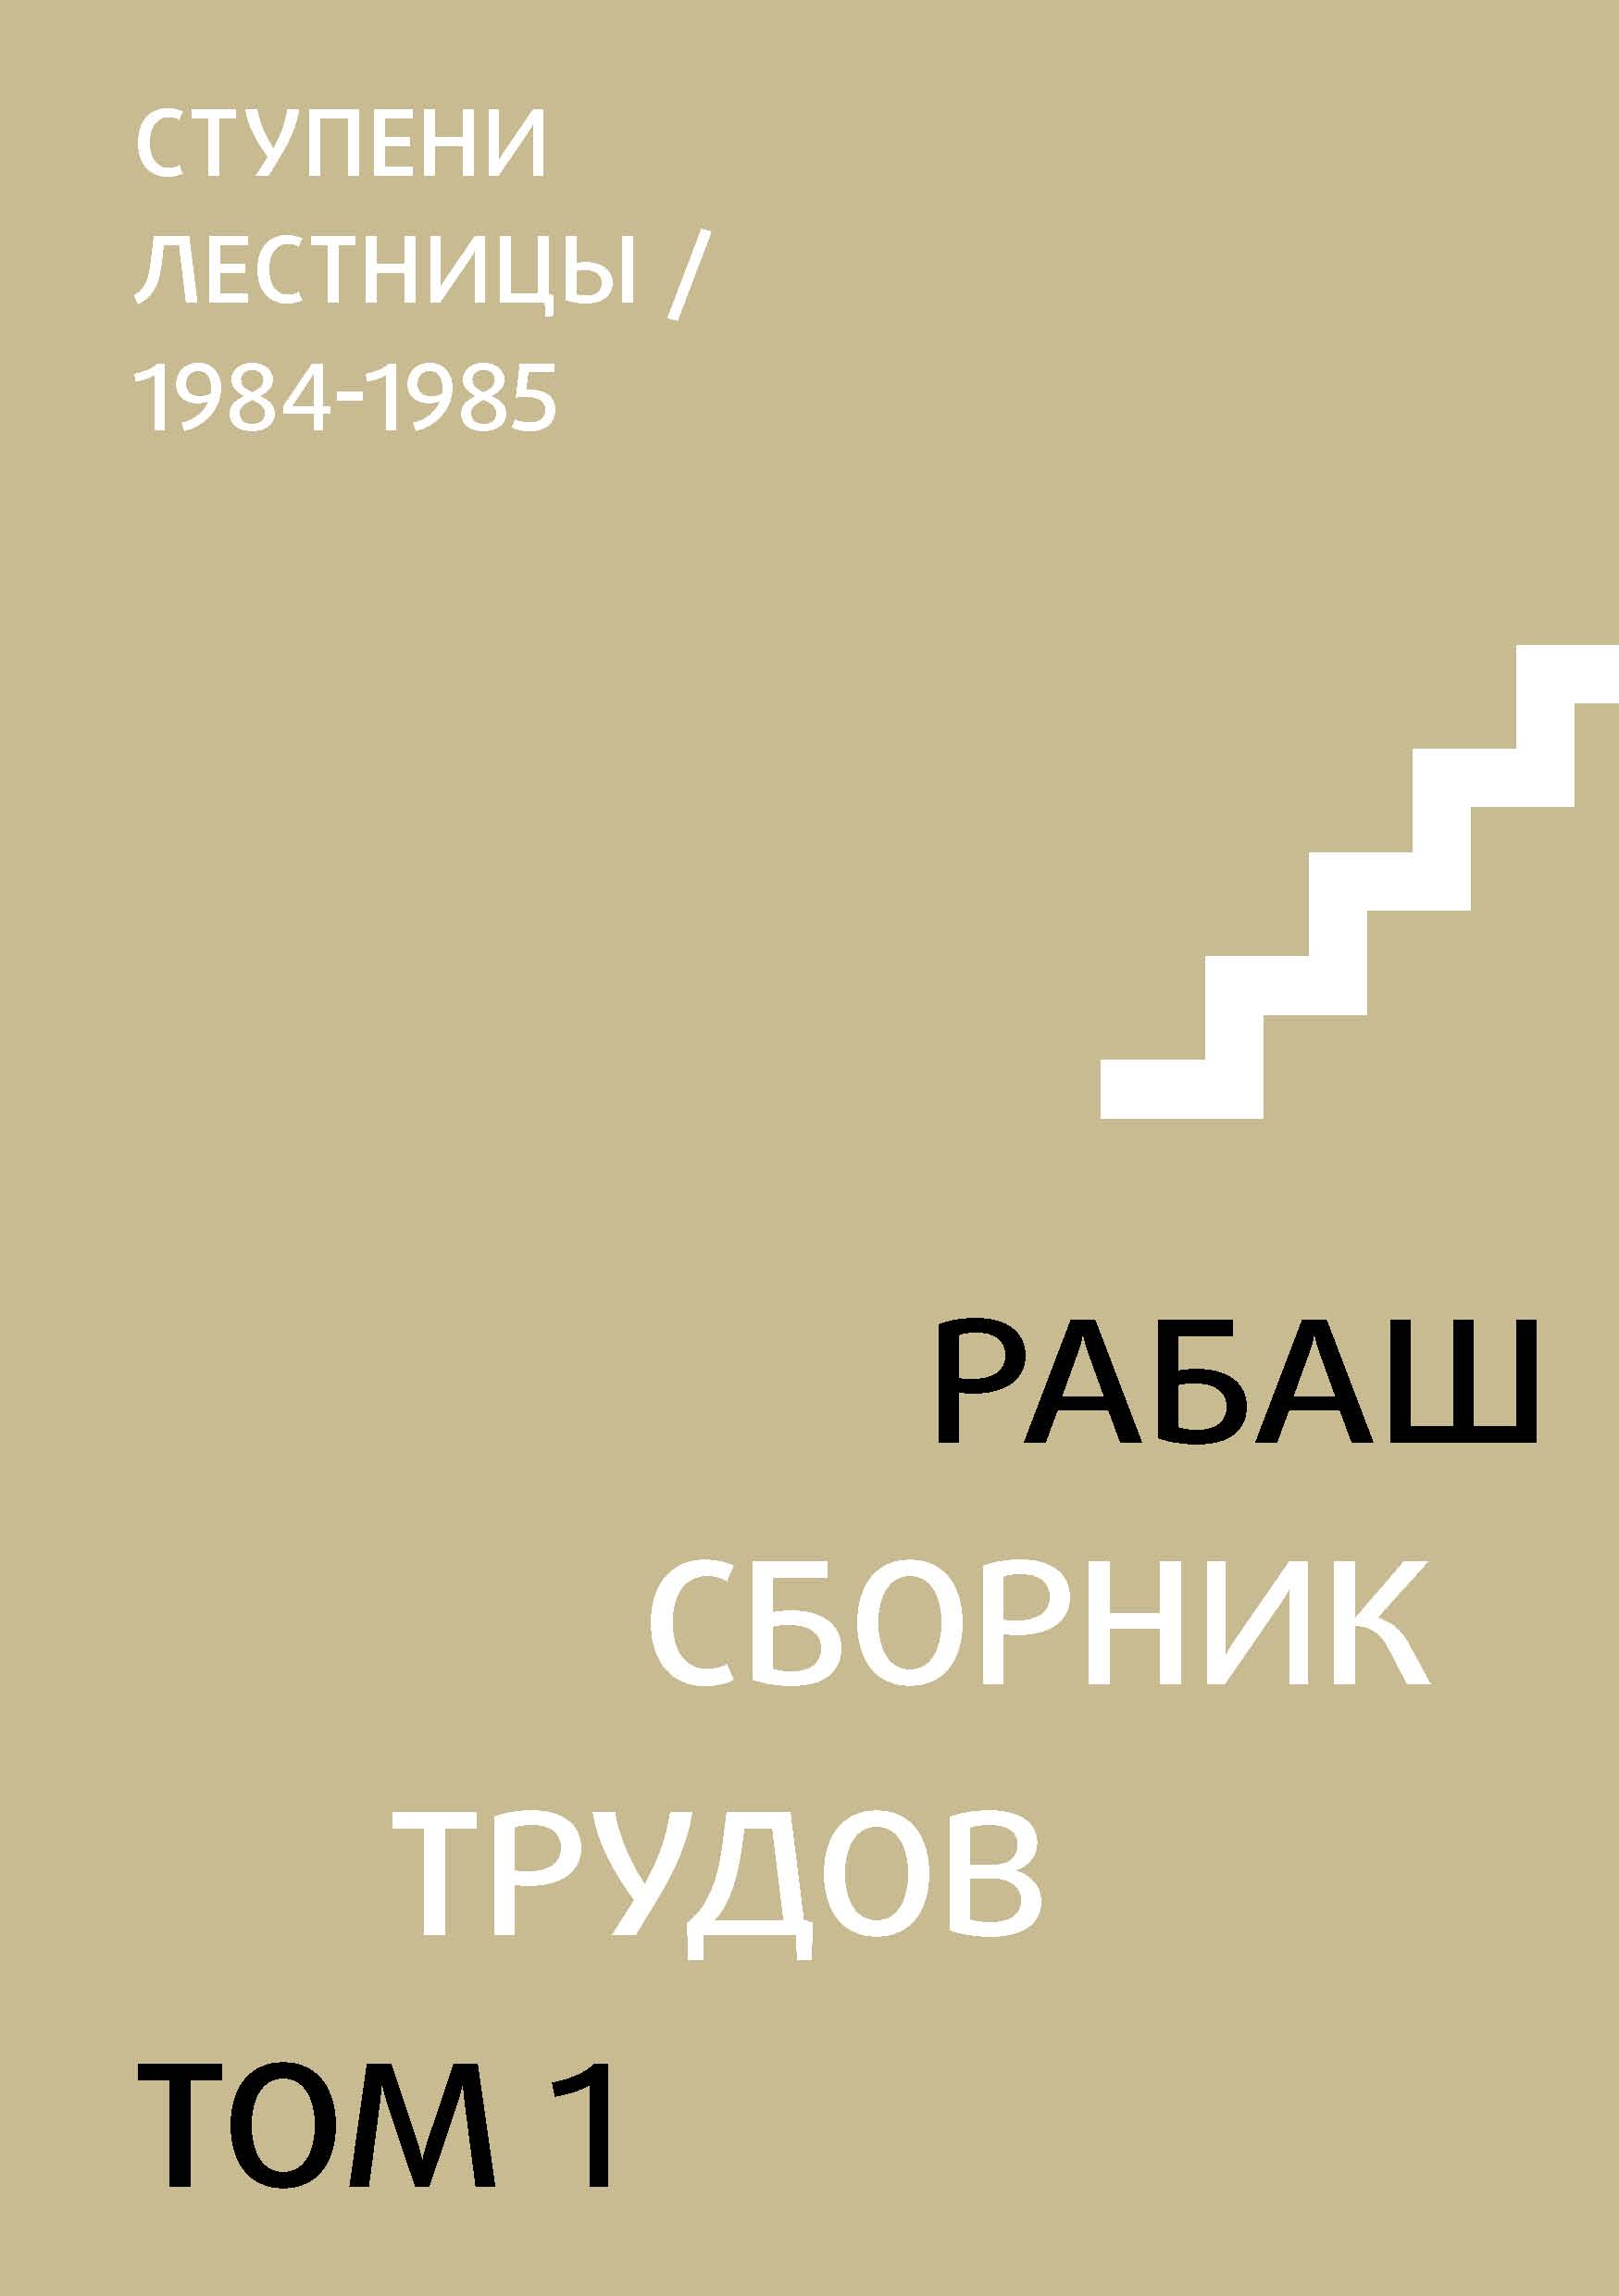 Сборник трудов. Том 1. Ступени лестницы (статьи 1984-1985 гг.)